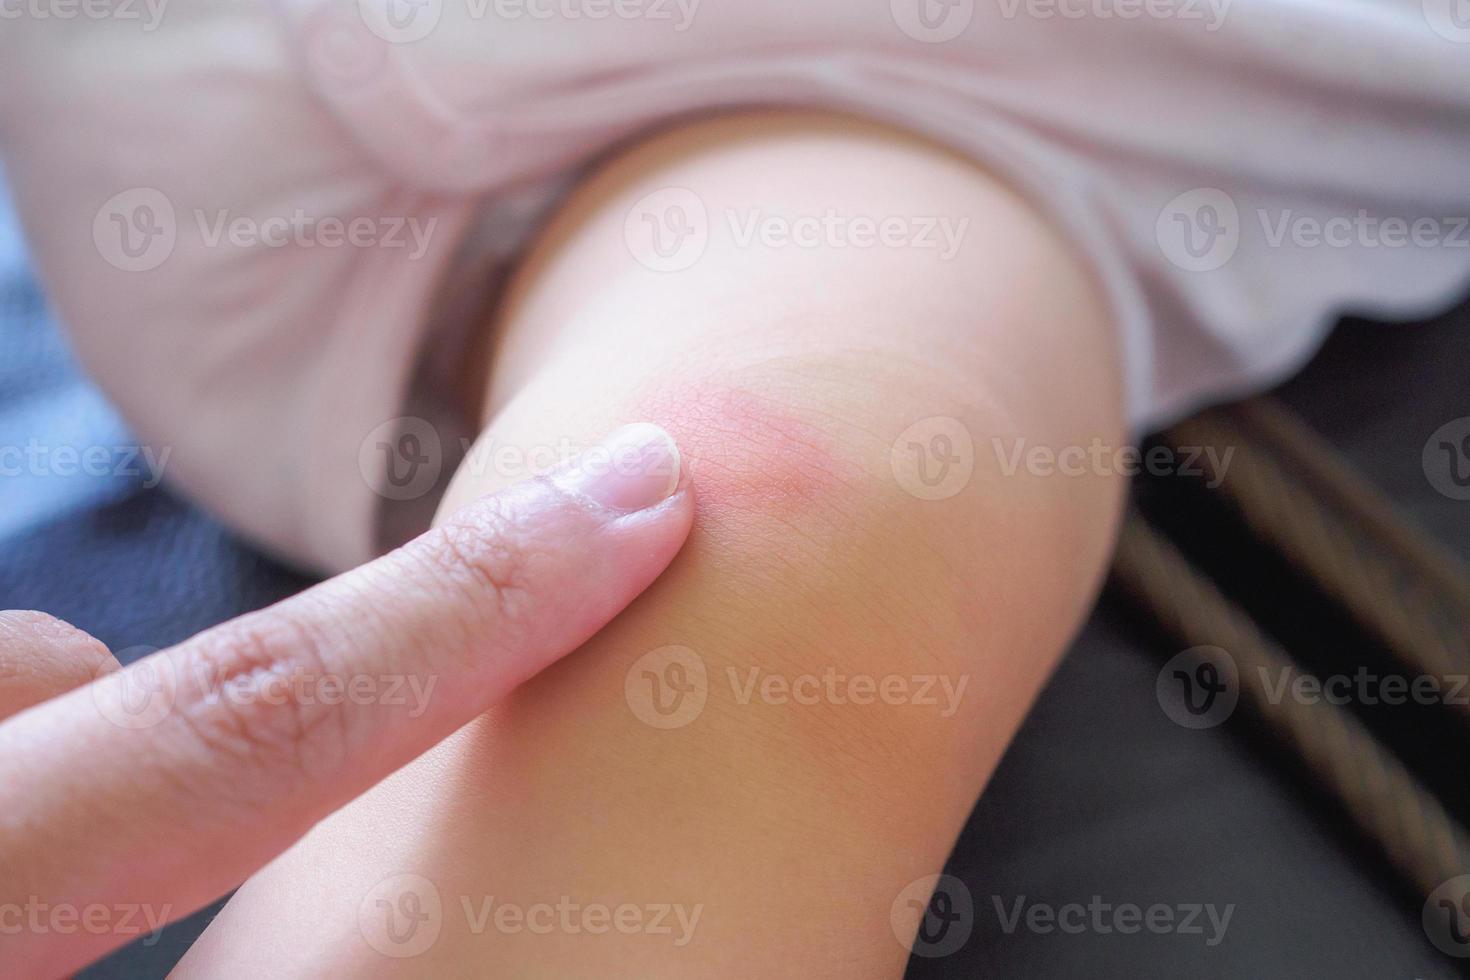 mutter trägt antiallergische creme am babyknie mit hautausschlag und allergie mit rotem fleck durch mückenstich auf foto